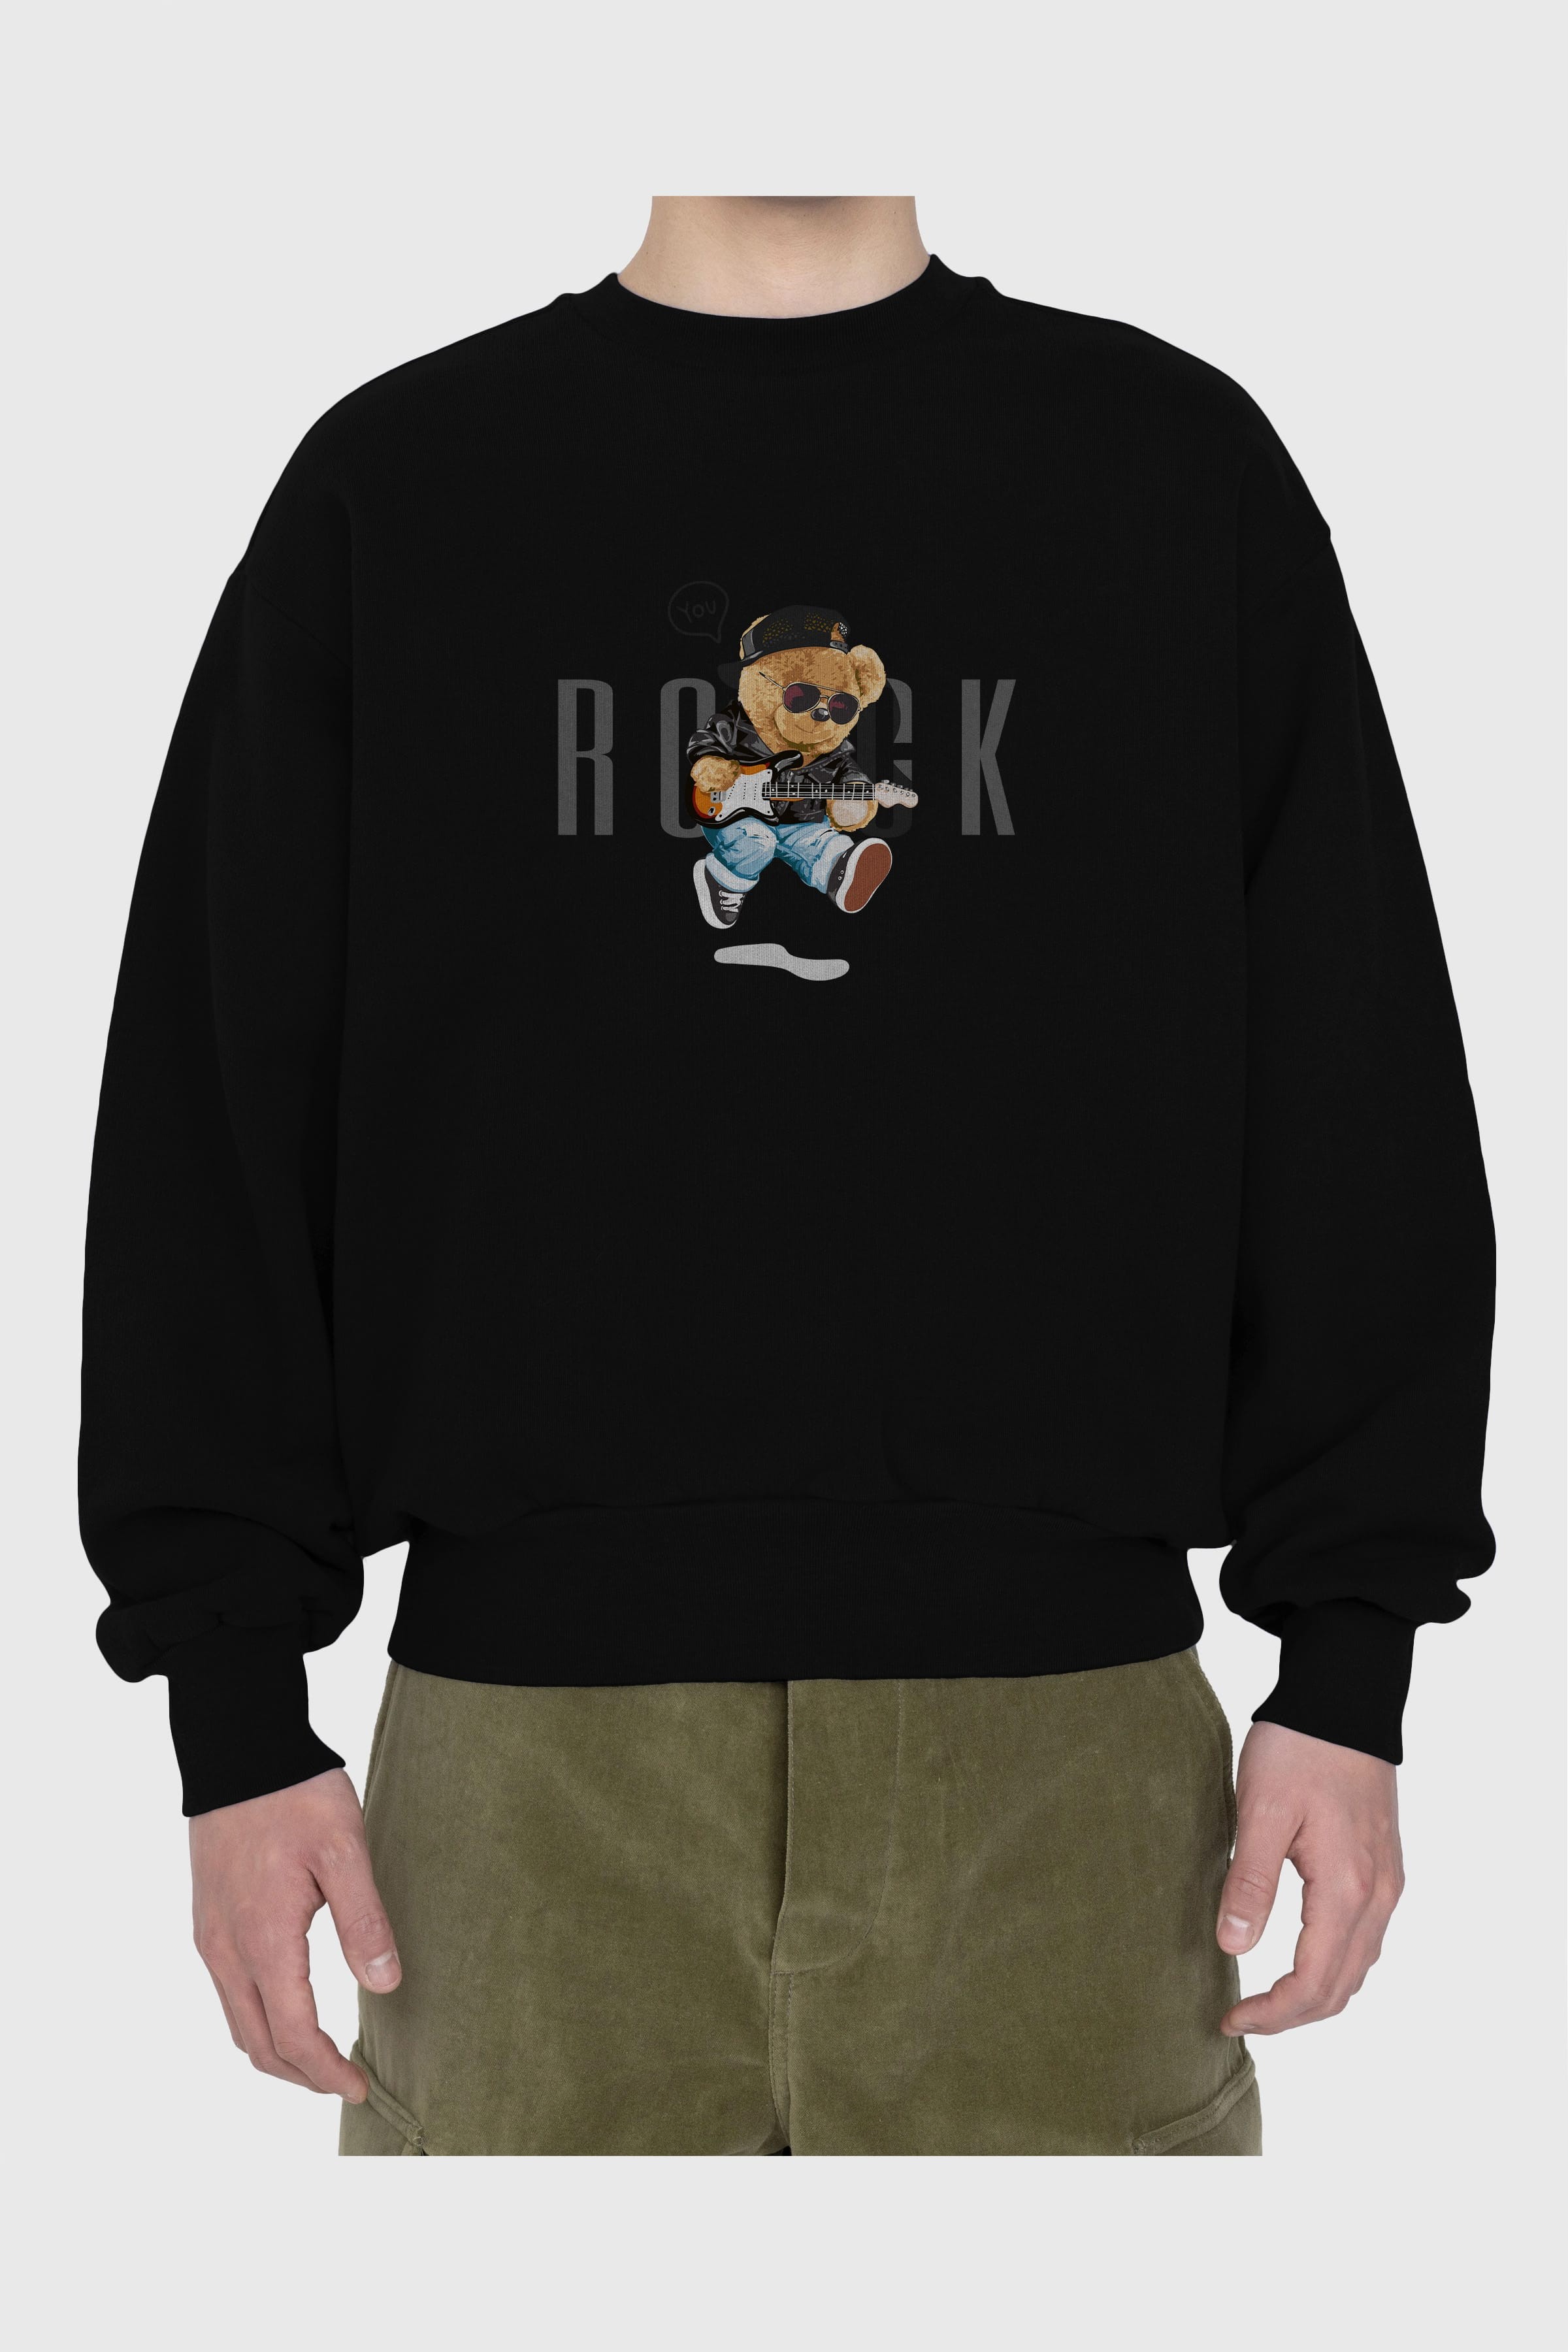 Teddy Bear Rock Ön Baskılı Oversize Sweatshirt Erkek Kadın Unisex